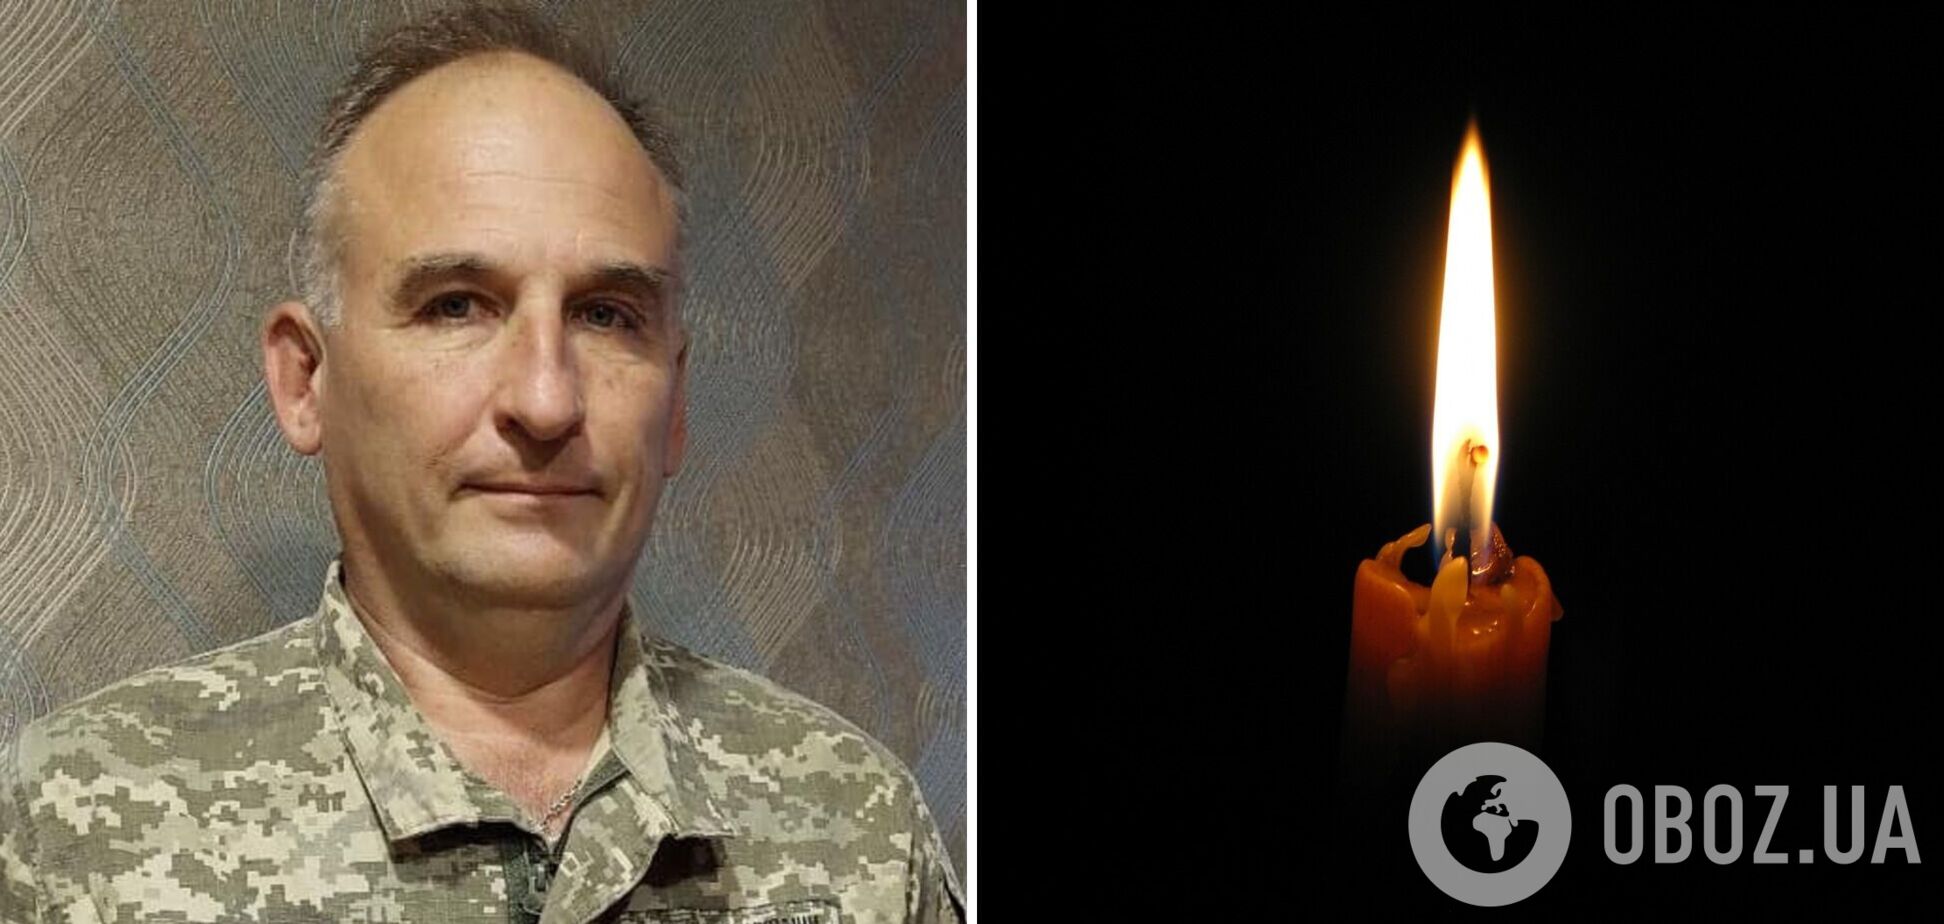 Пример настоящего патриота: в боях за Украину погиб врач и офицер Игорь Мельник